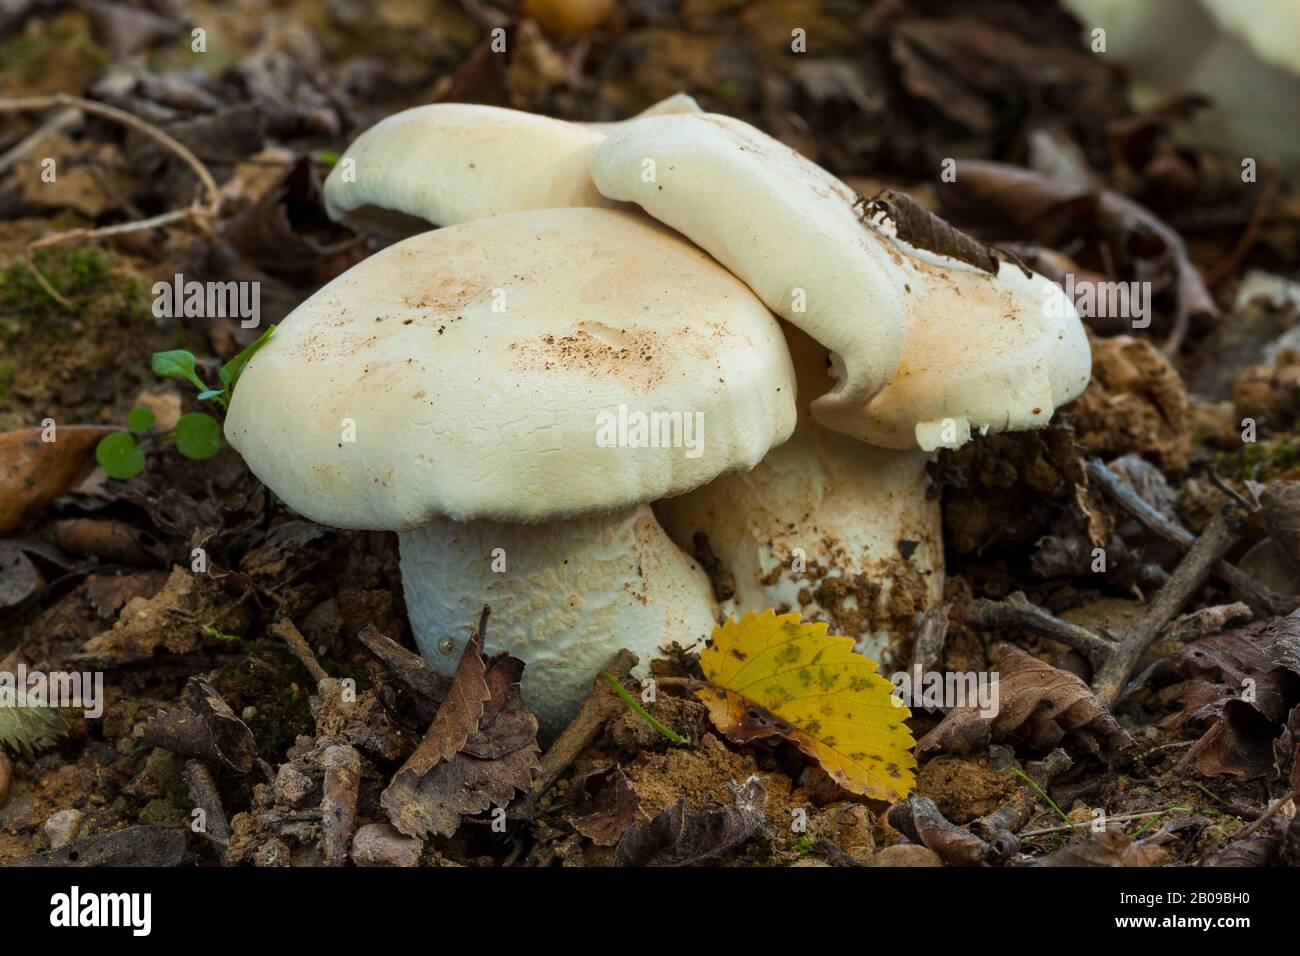 Clitopilus prunulus, conosciuto come il fungo dolce del pane, che cresce nella foresta tra le foglie cadute. Spagna Foto Stock